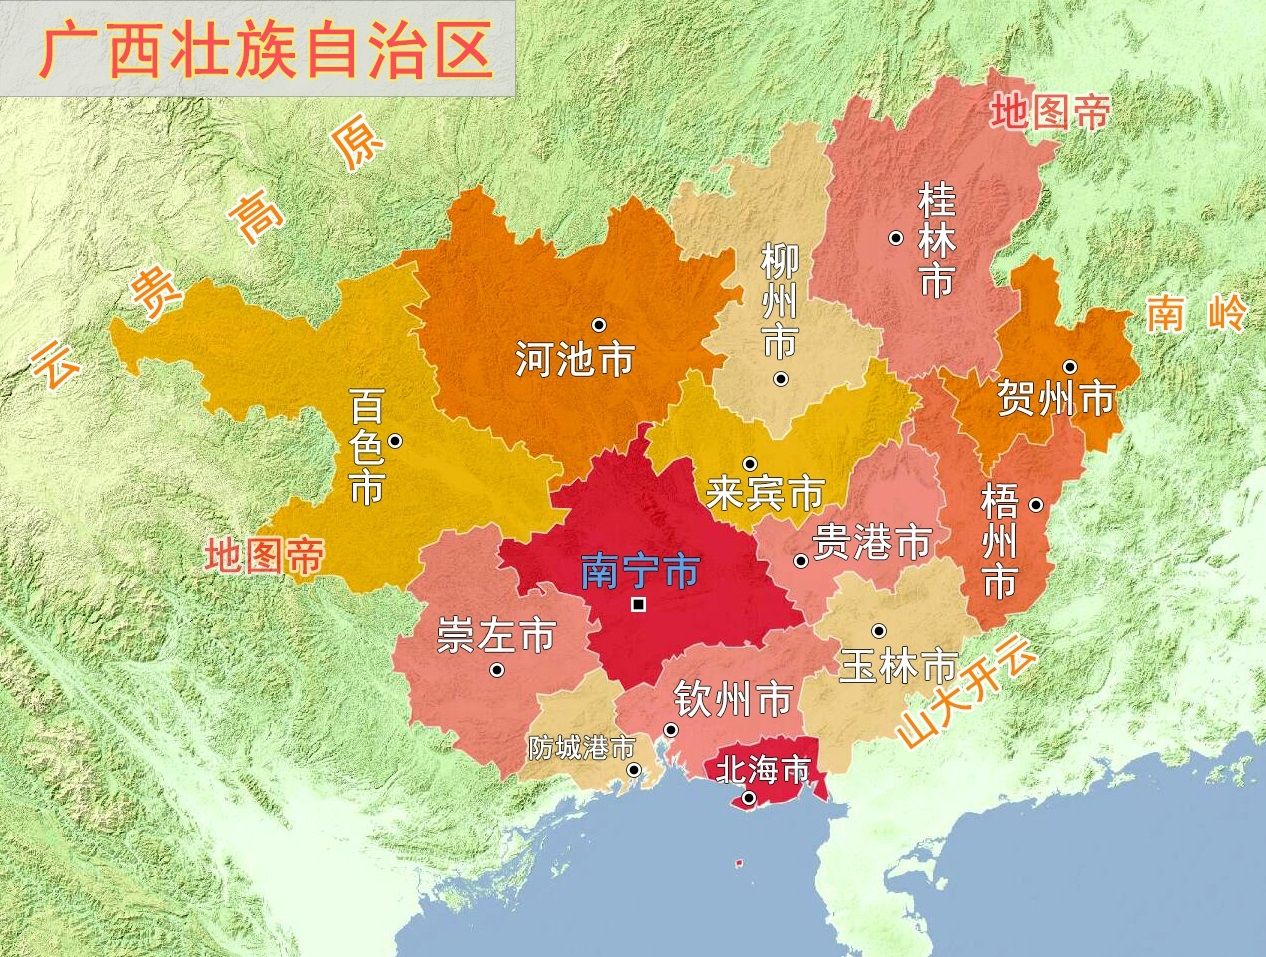 广西贵港也曾叫贵州,和贵州省有关系吗?